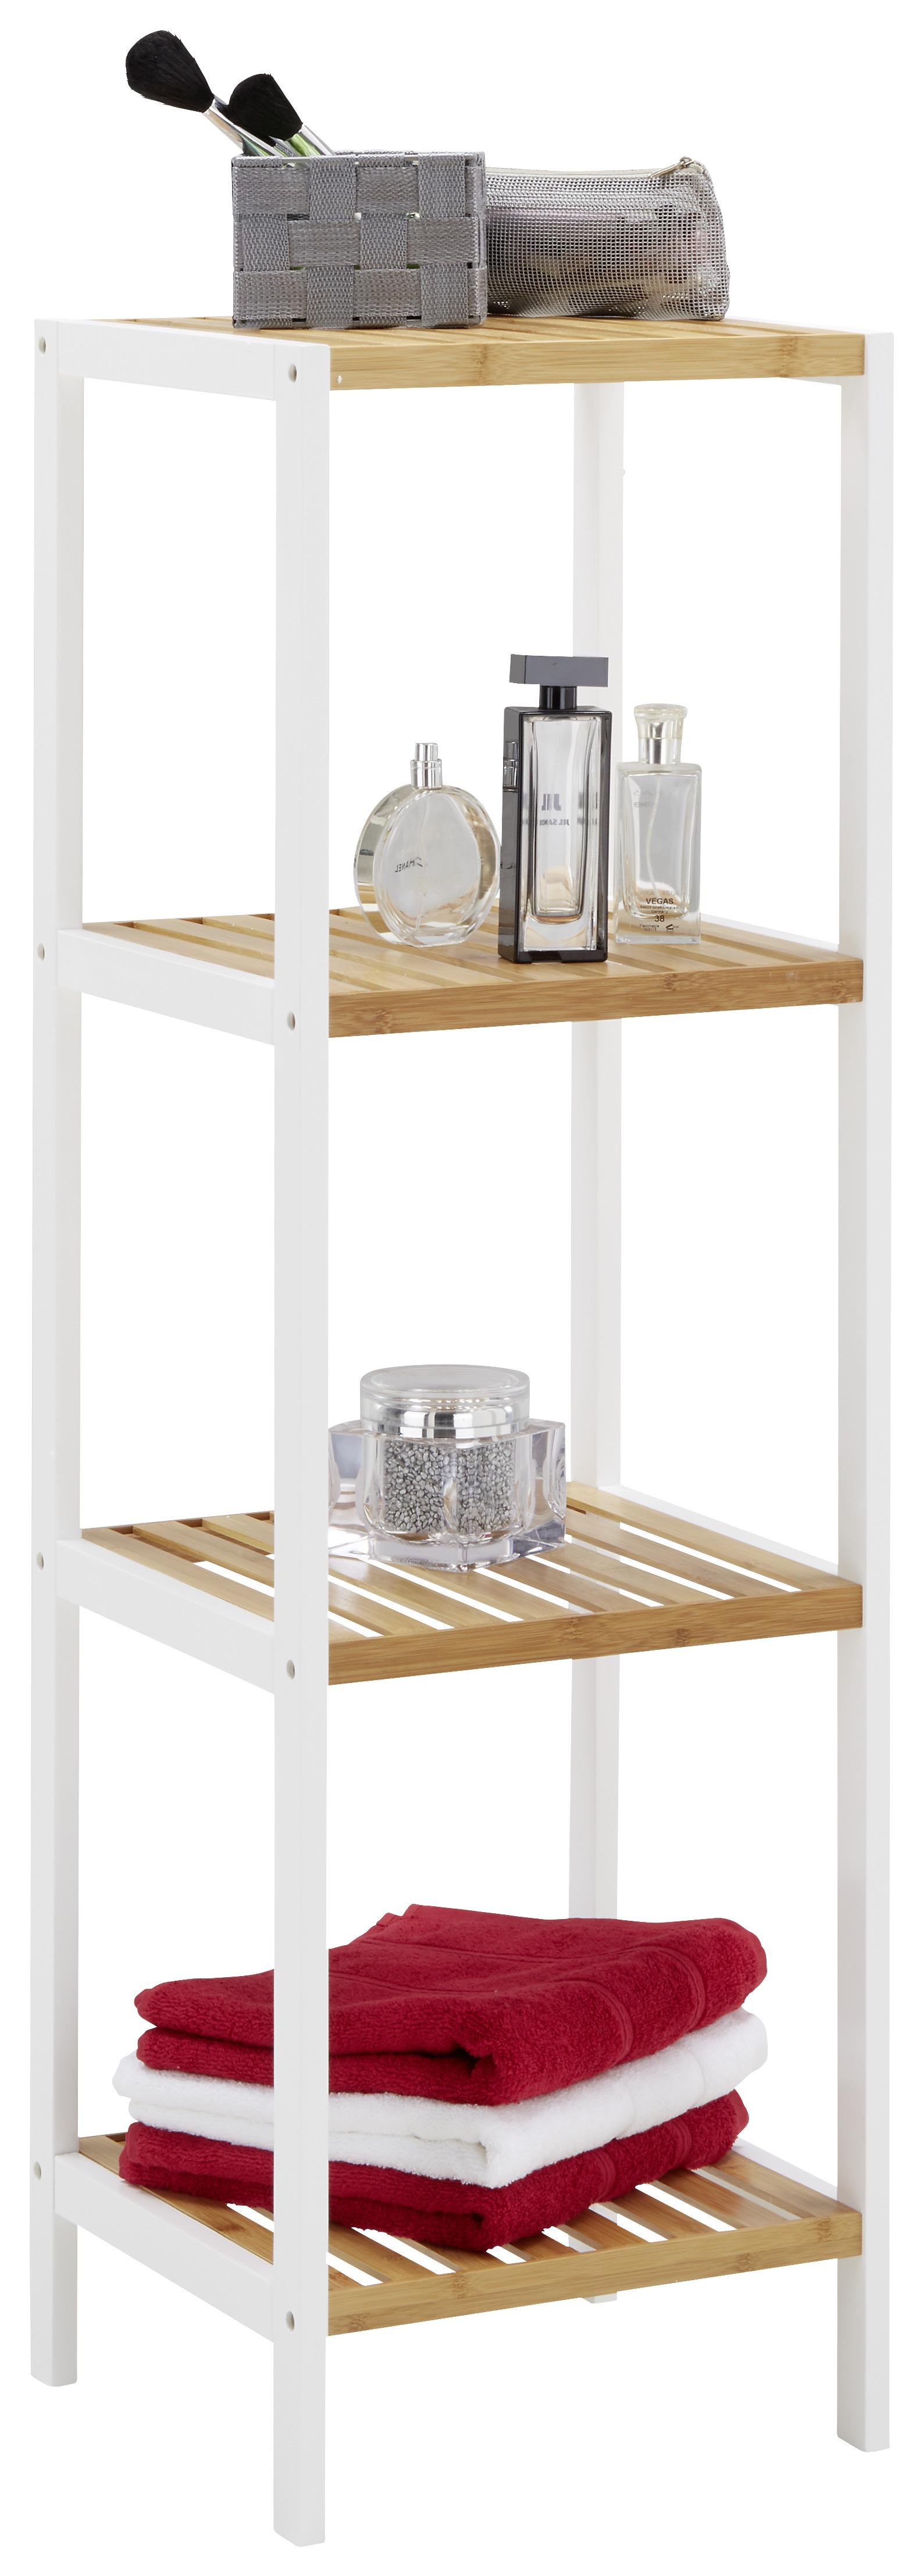 Regal aus Bambus - Weiss/Naturfarben, Modern, Holz/Holzwerkstoff (34/110/33cm) - Modern Living